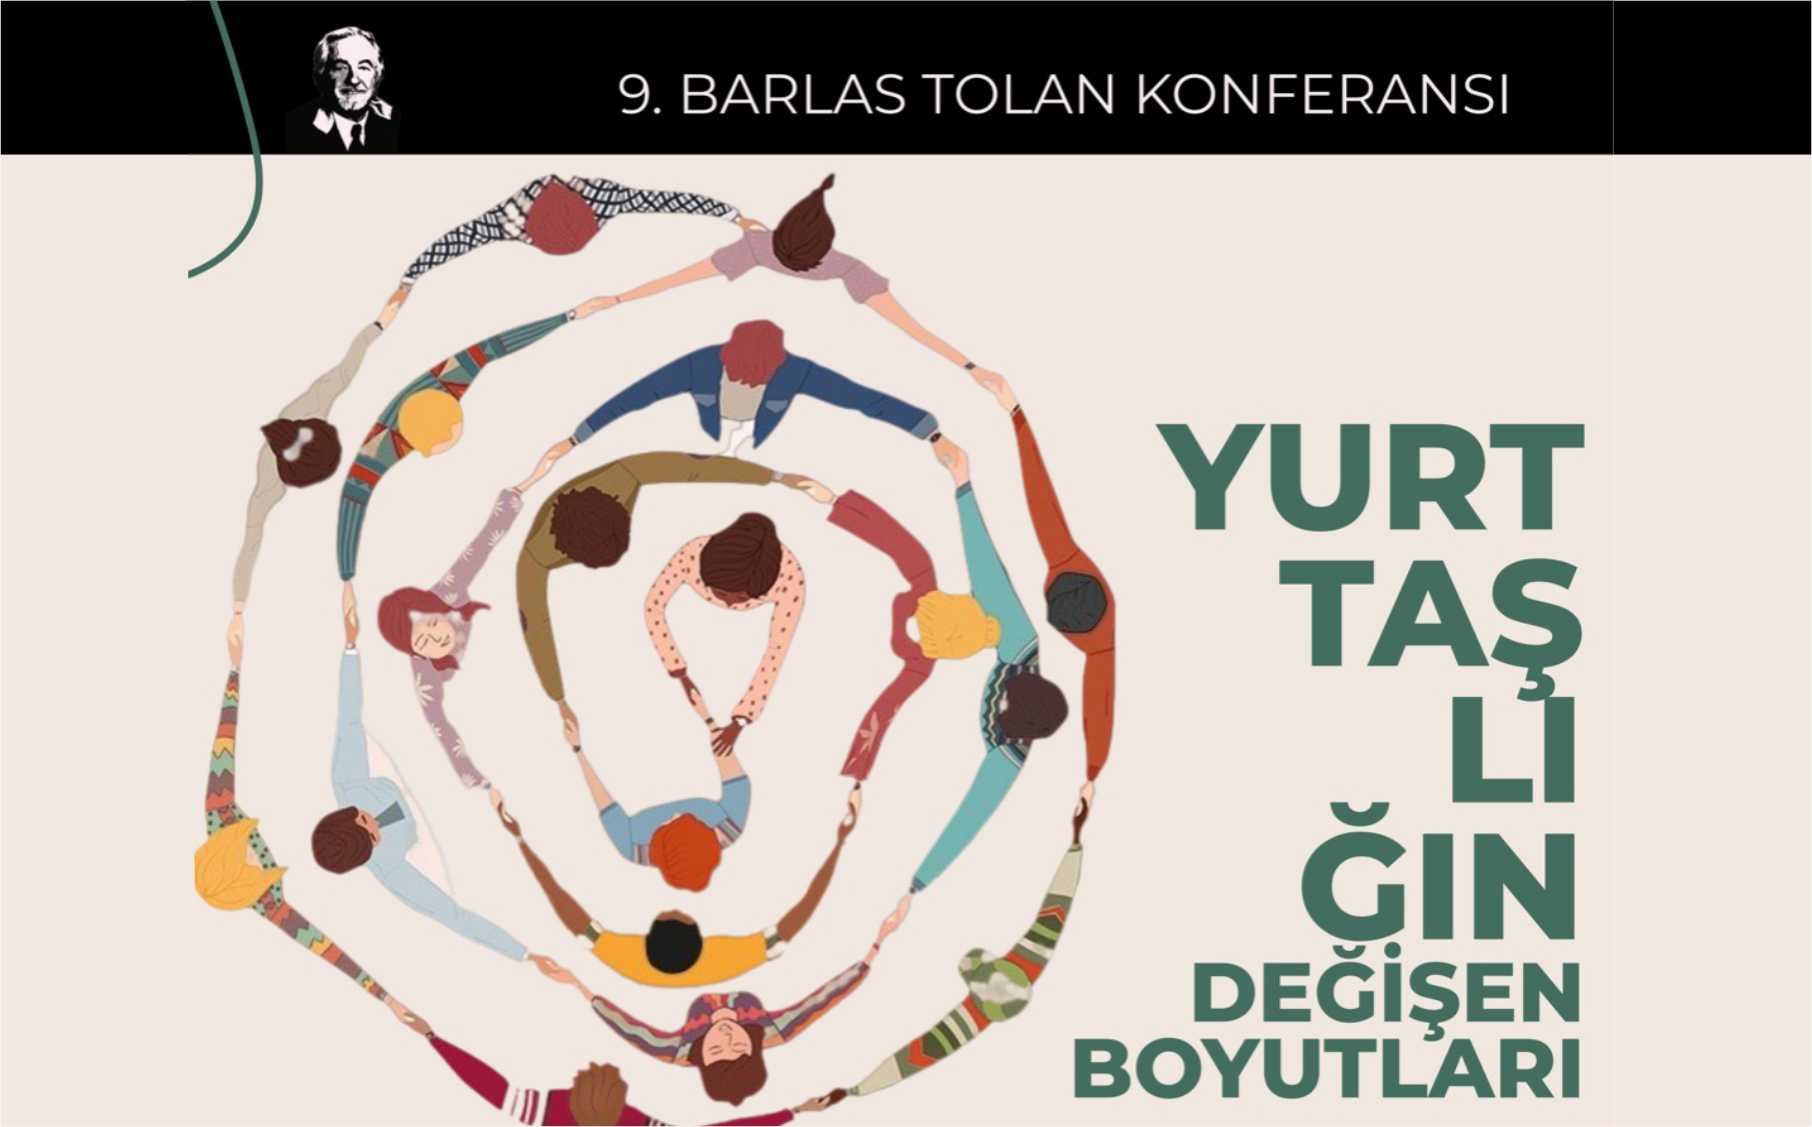 9. Barlas Tolan Konferansı: Yurttaşlığın Değişen Boyutları duyuru görseli